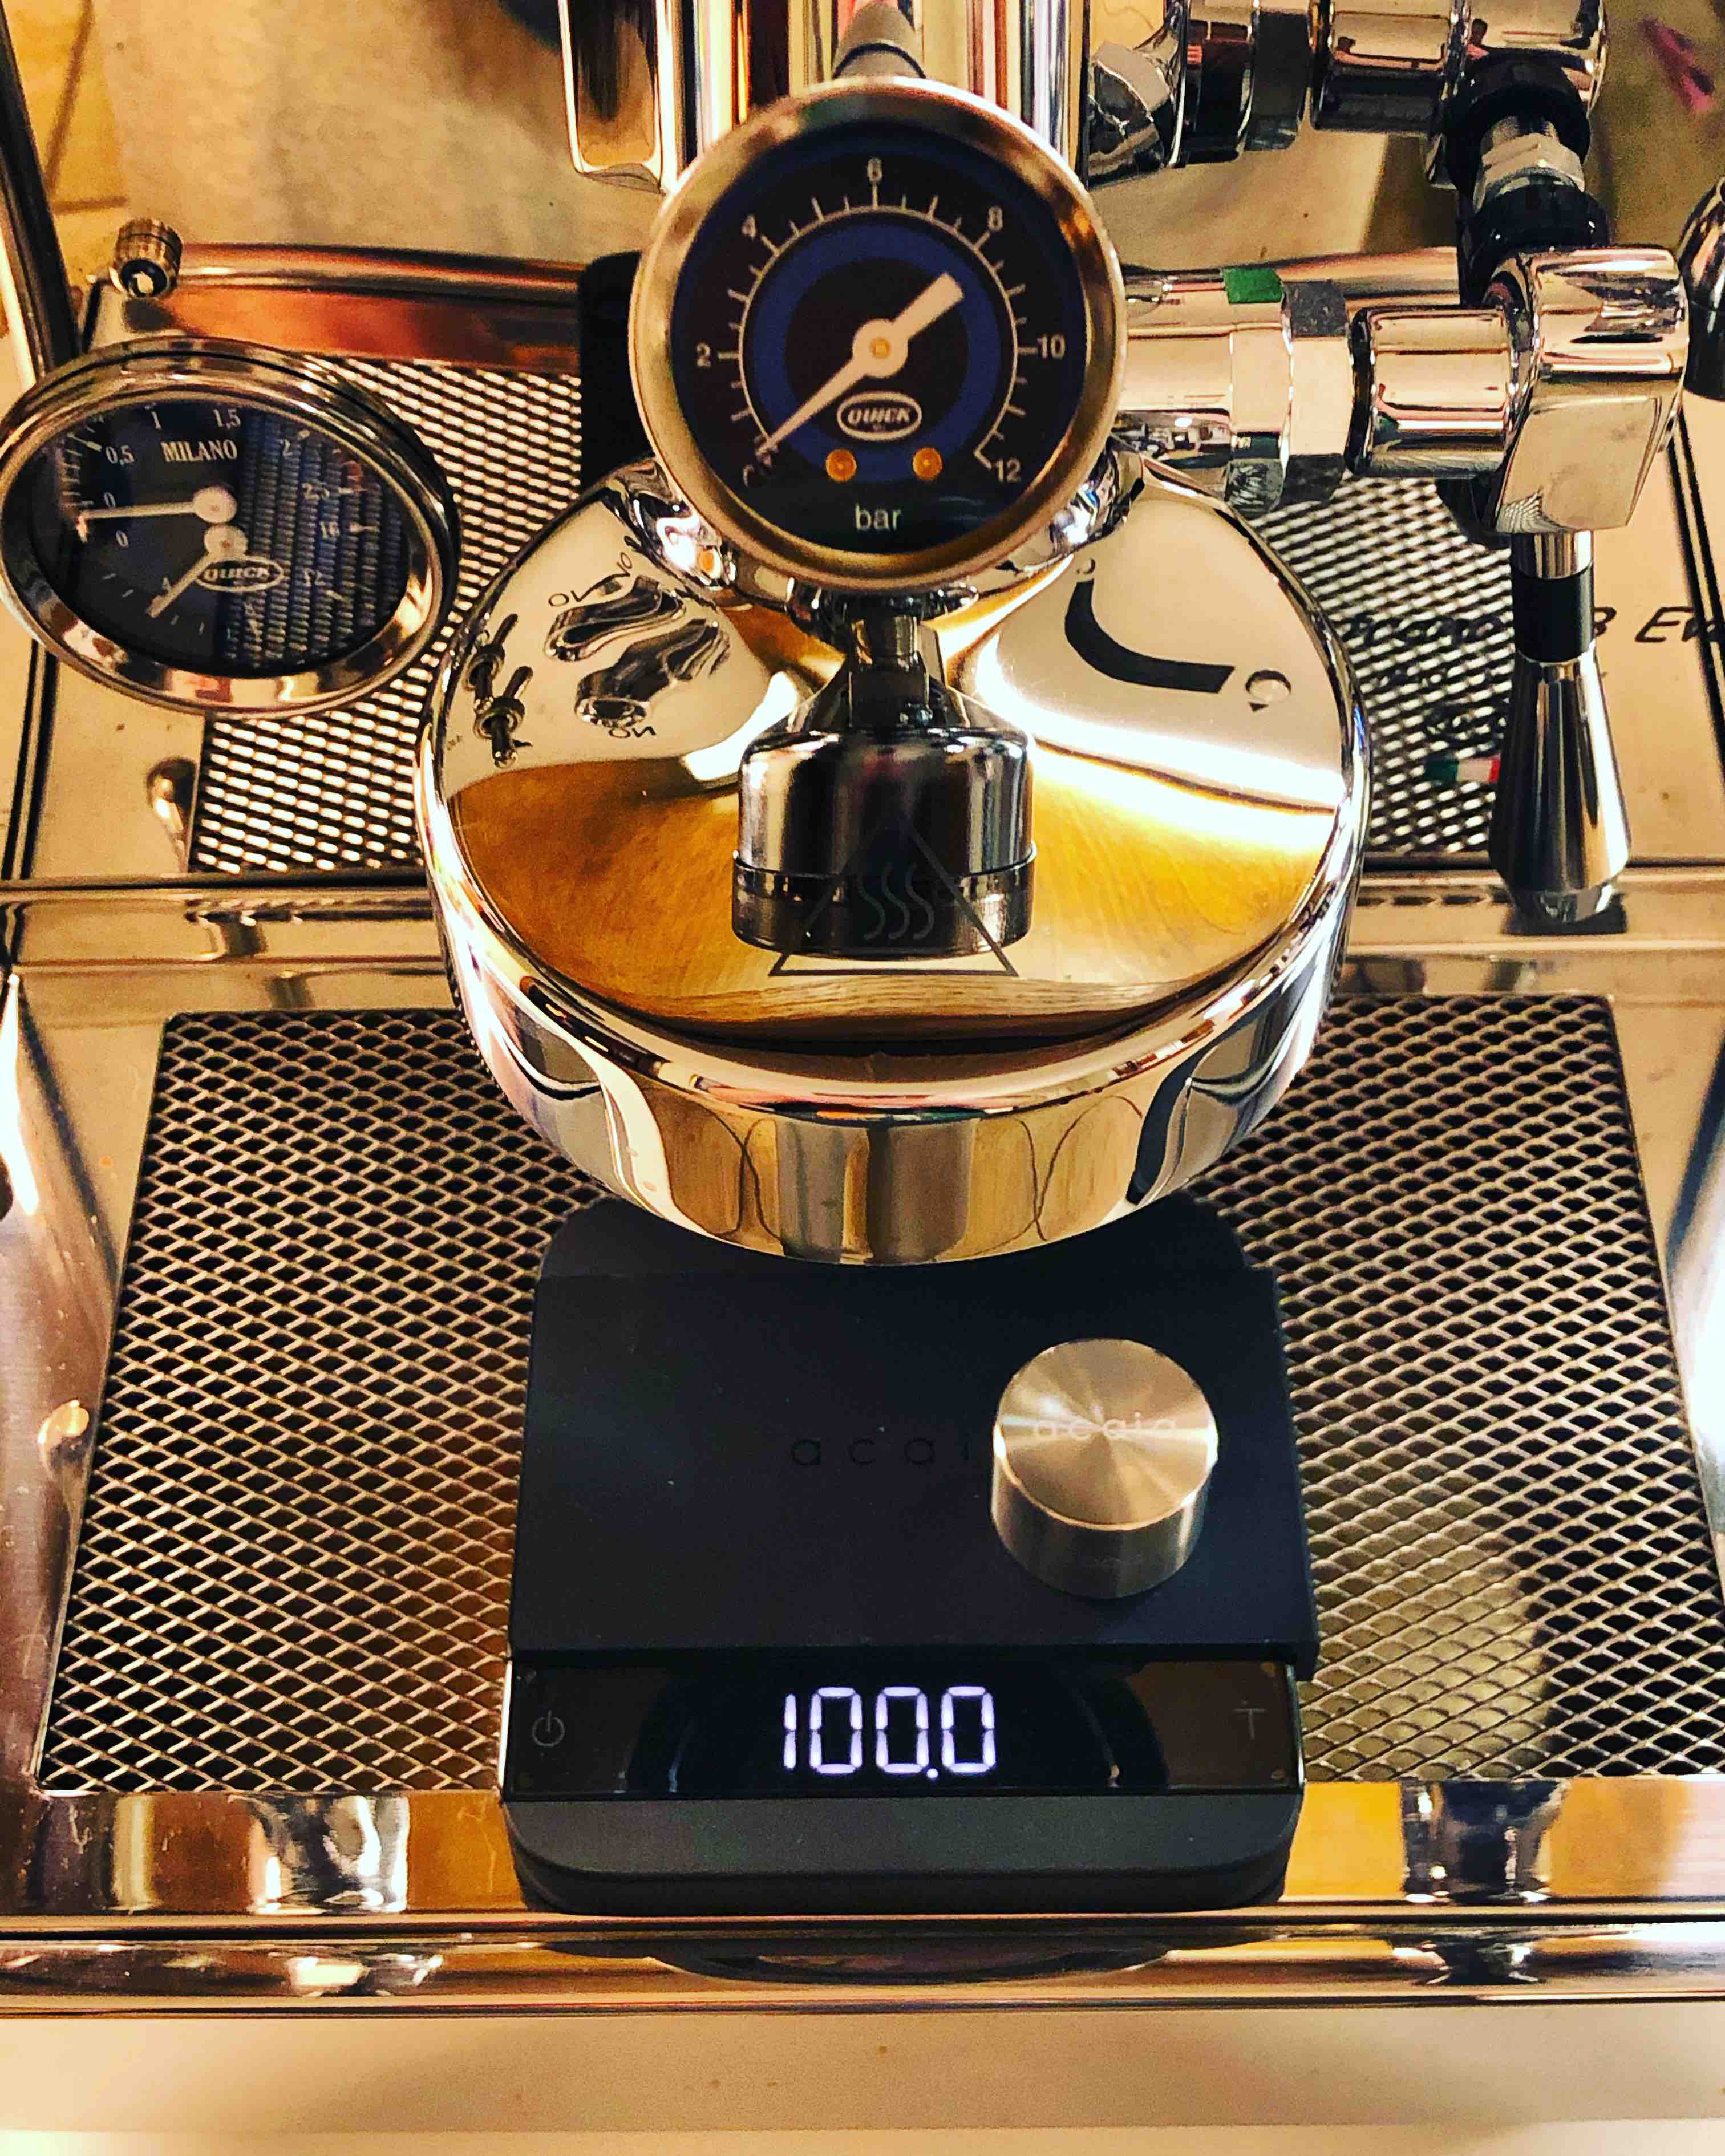 Acaia Lunar – High Precision Espresso Scale